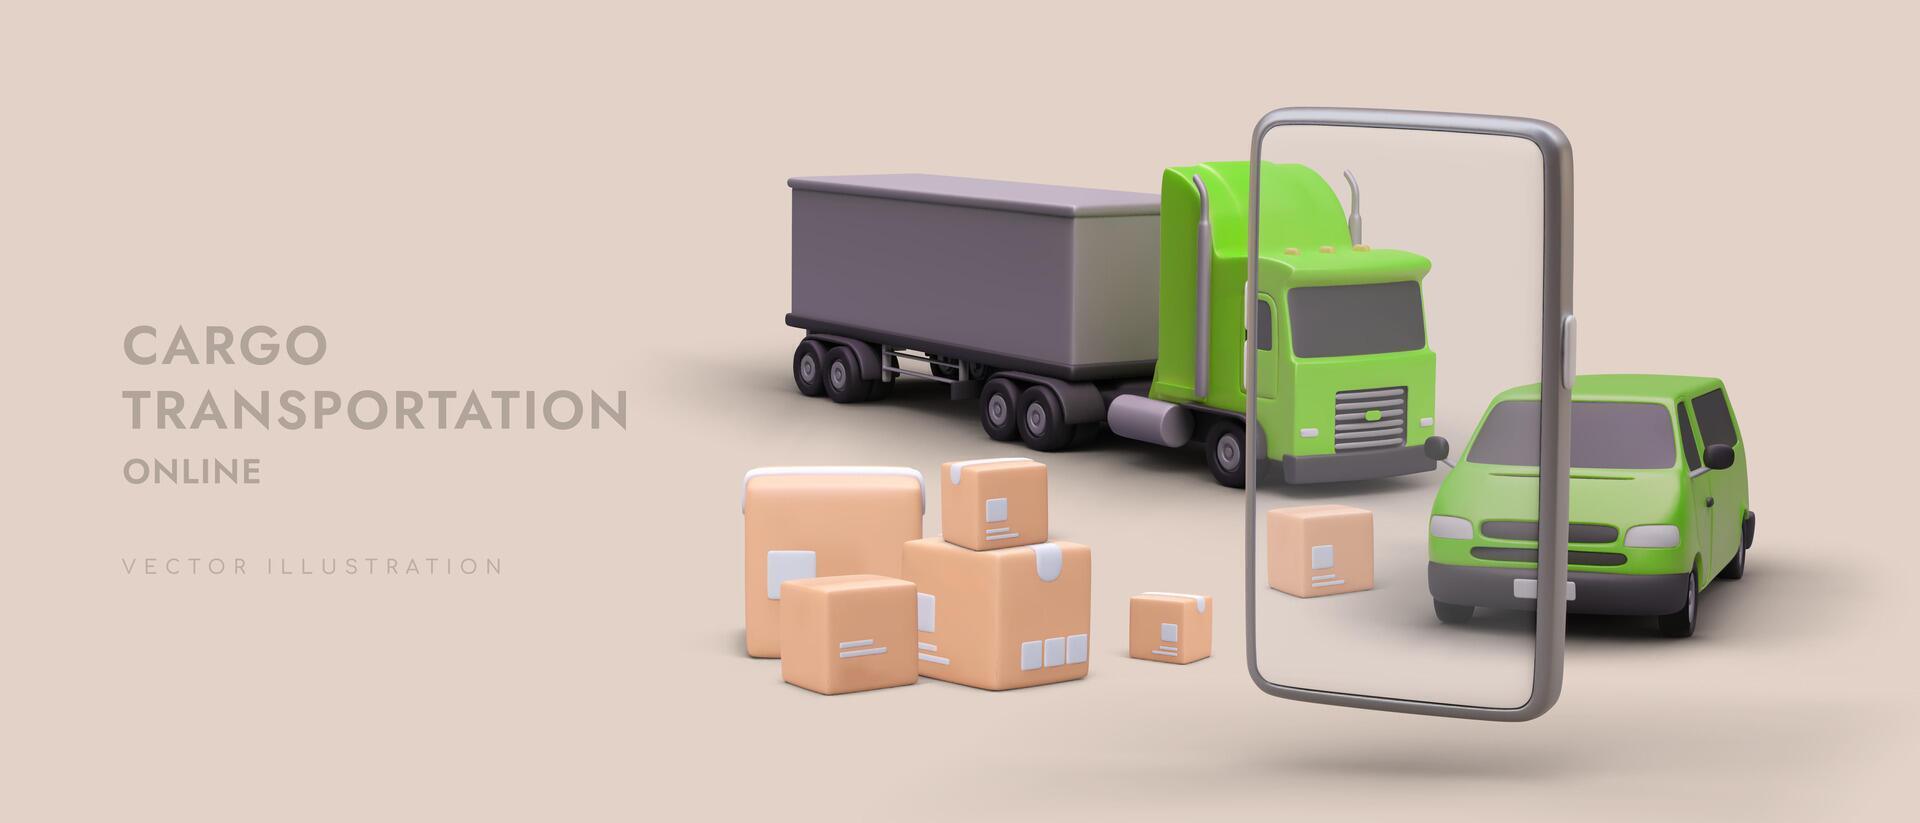 3d smartphone, groen vrachtwagen, pakketten en auto. online bestellen van snel goederen levering via mobiel telefoon vector